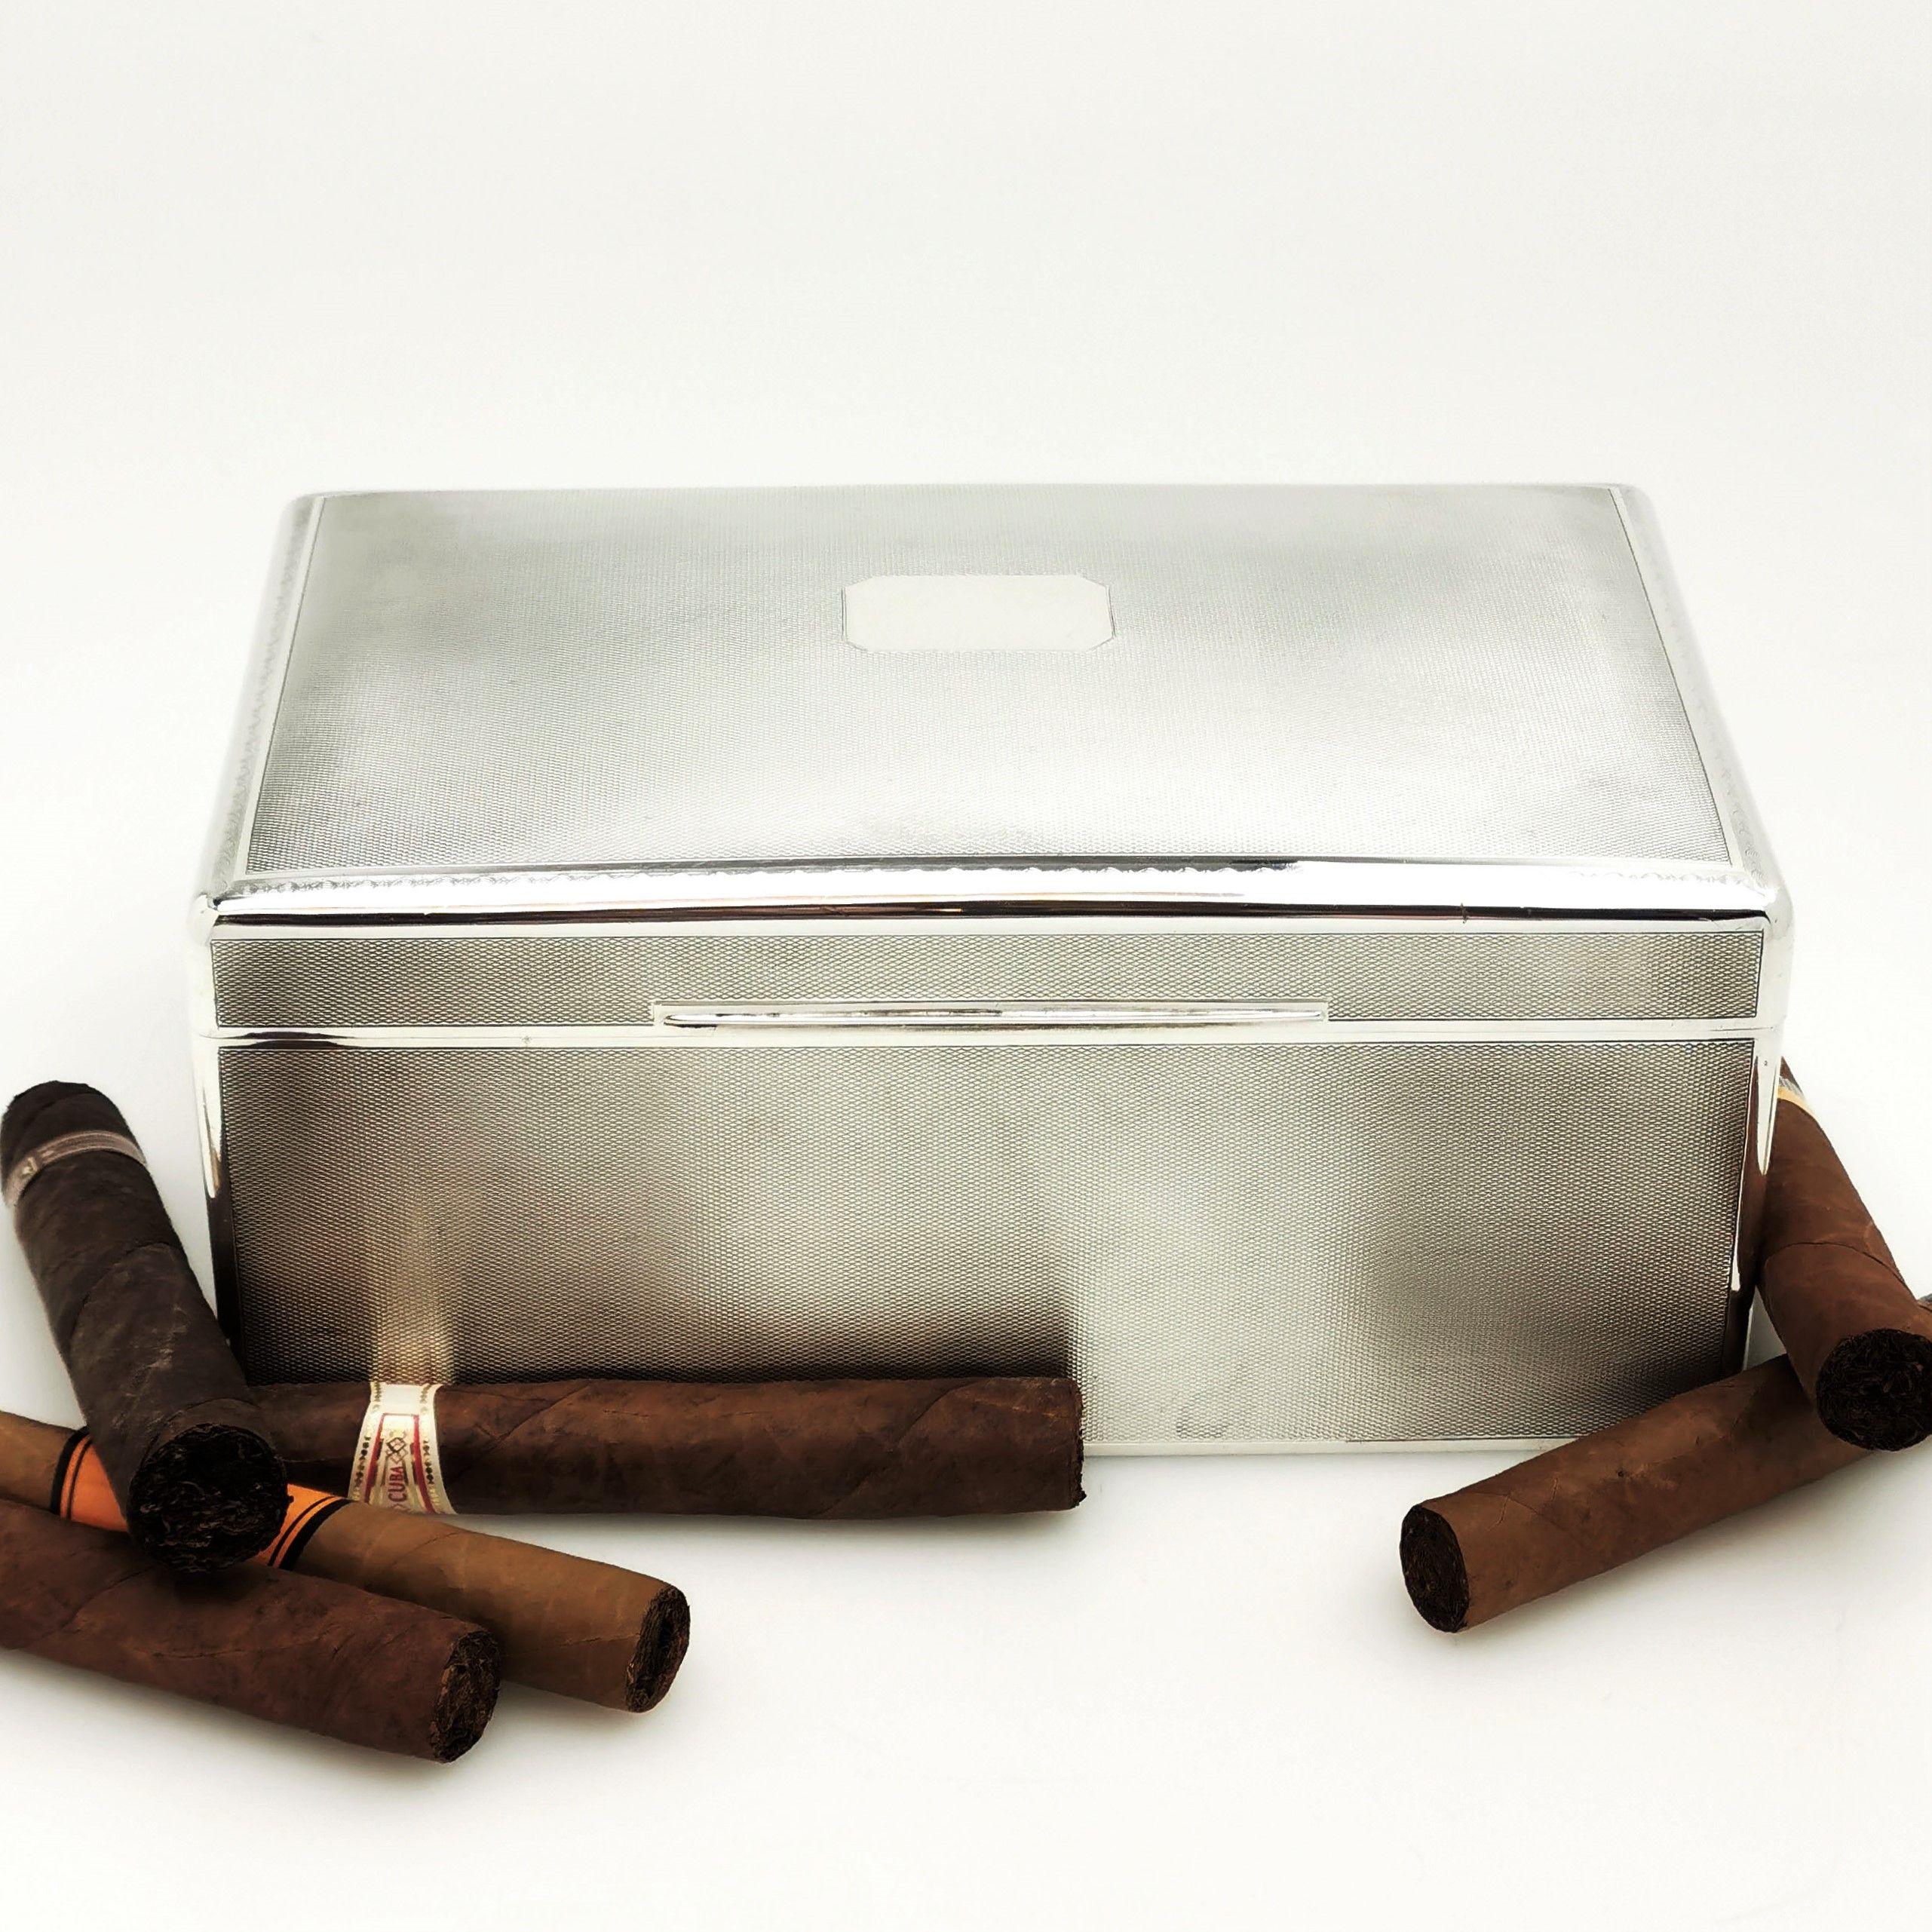 20th Century Sterling Silver Art Deco Cigar Box or Cigarette Box, circa 1935 Sheffield